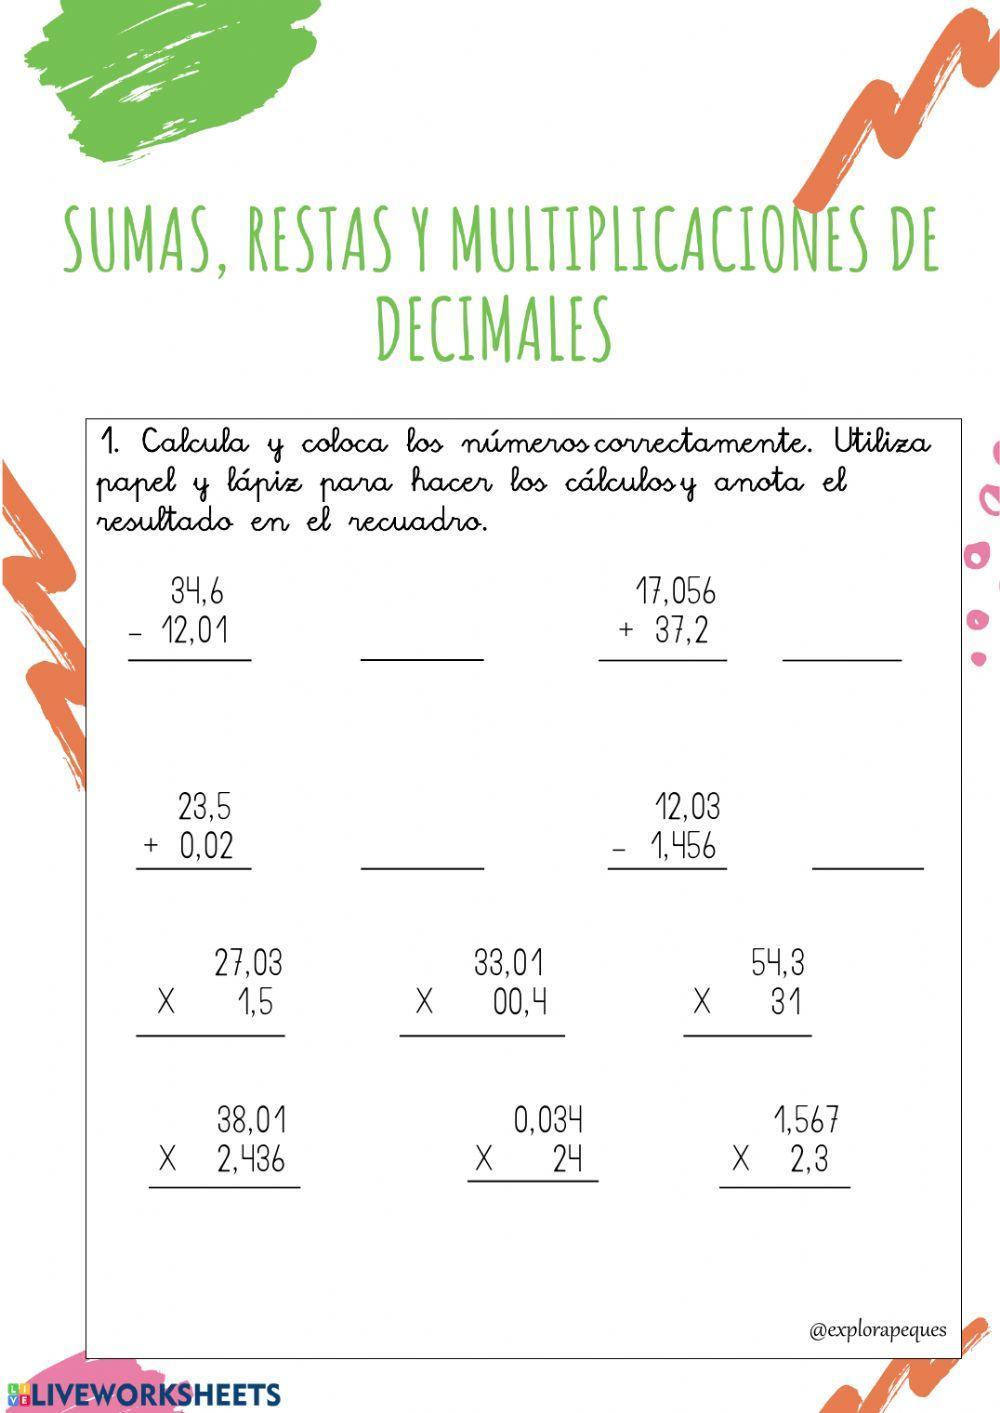 Sumar, resta y multiplicación de decimales